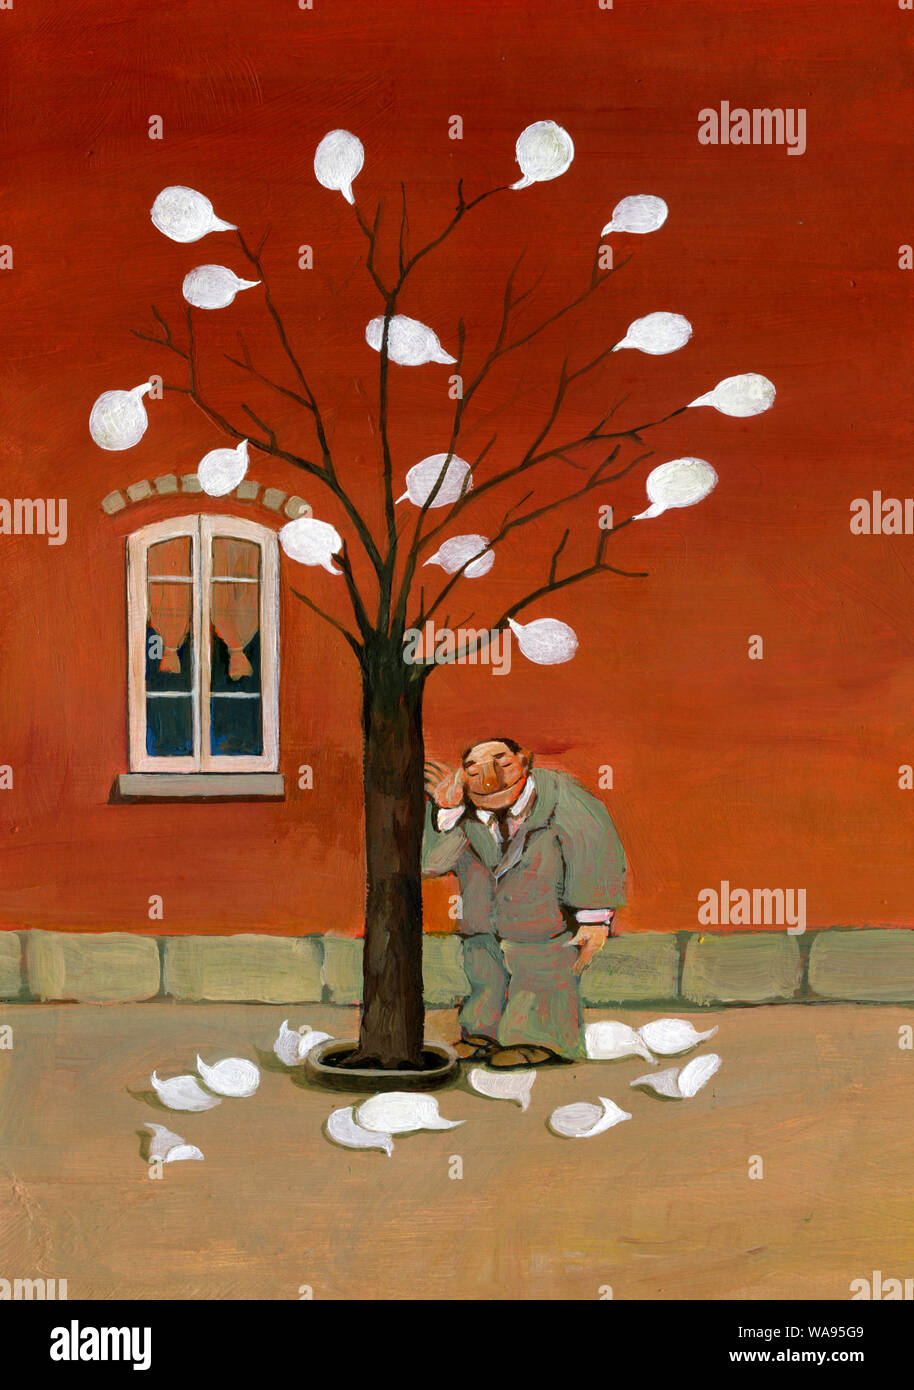 El hombre escucha al árbol las hojas del árbol son los tebeos metáfora de enseñanza natureÕs surrealista ilustración acrílico Foto de stock